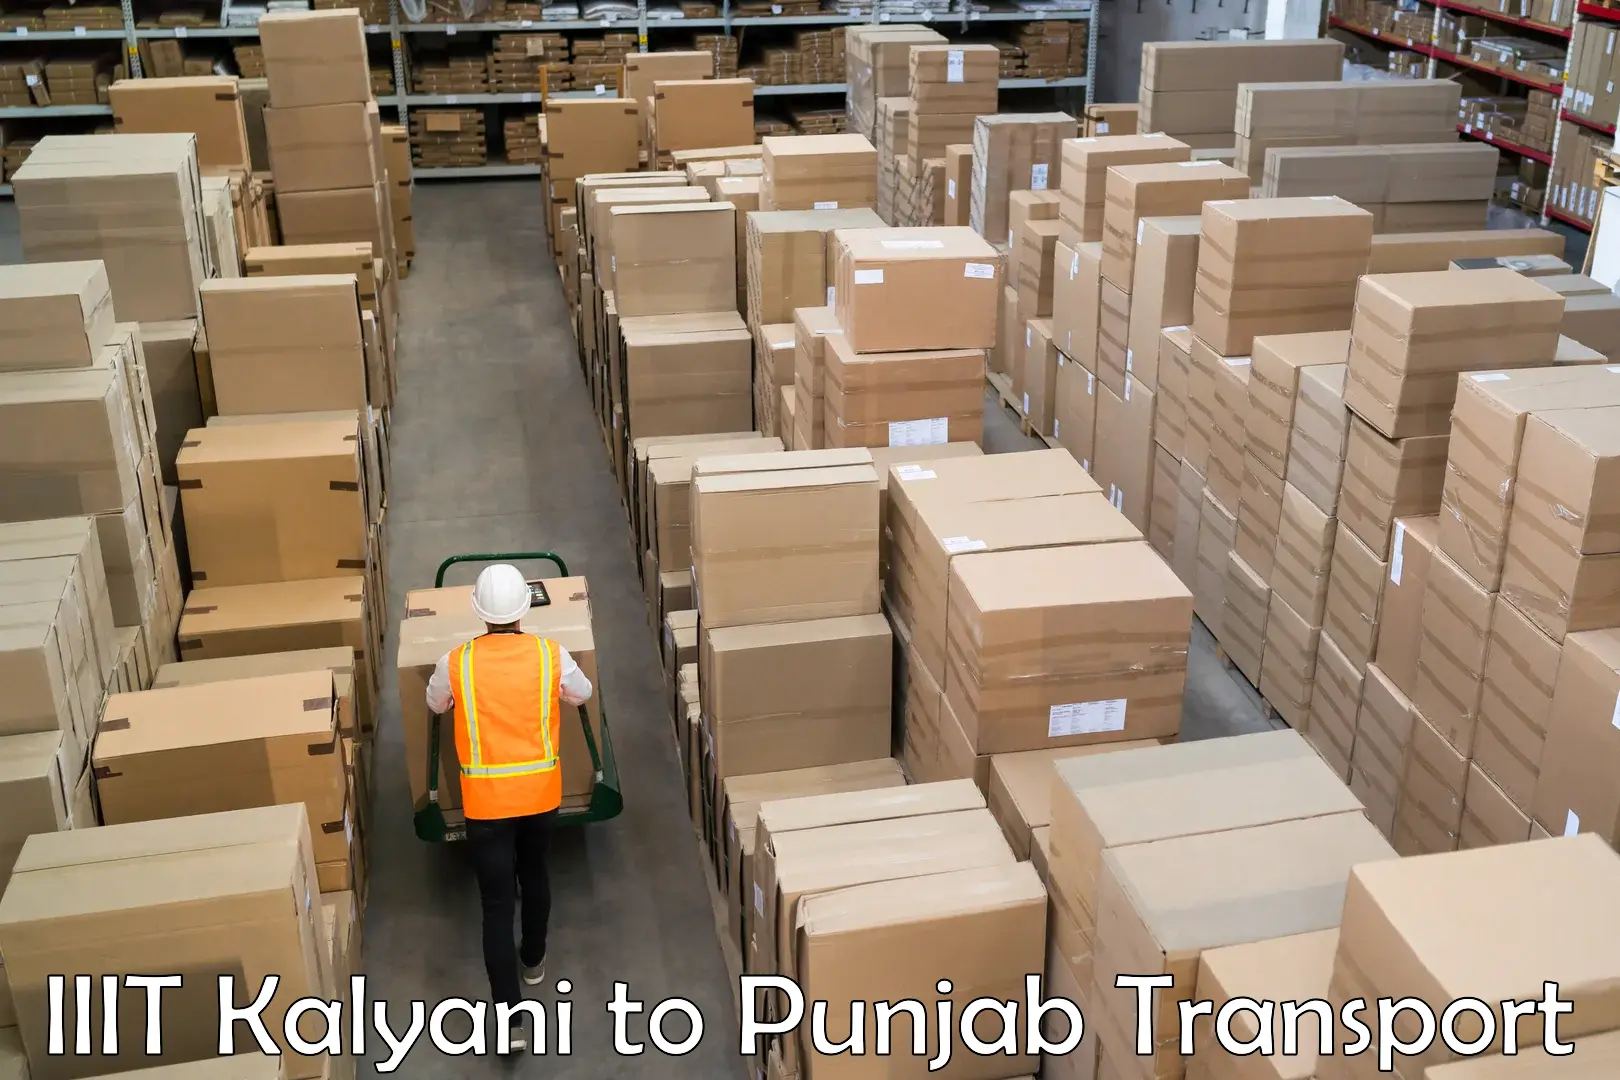 India truck logistics services IIIT Kalyani to Zirakpur